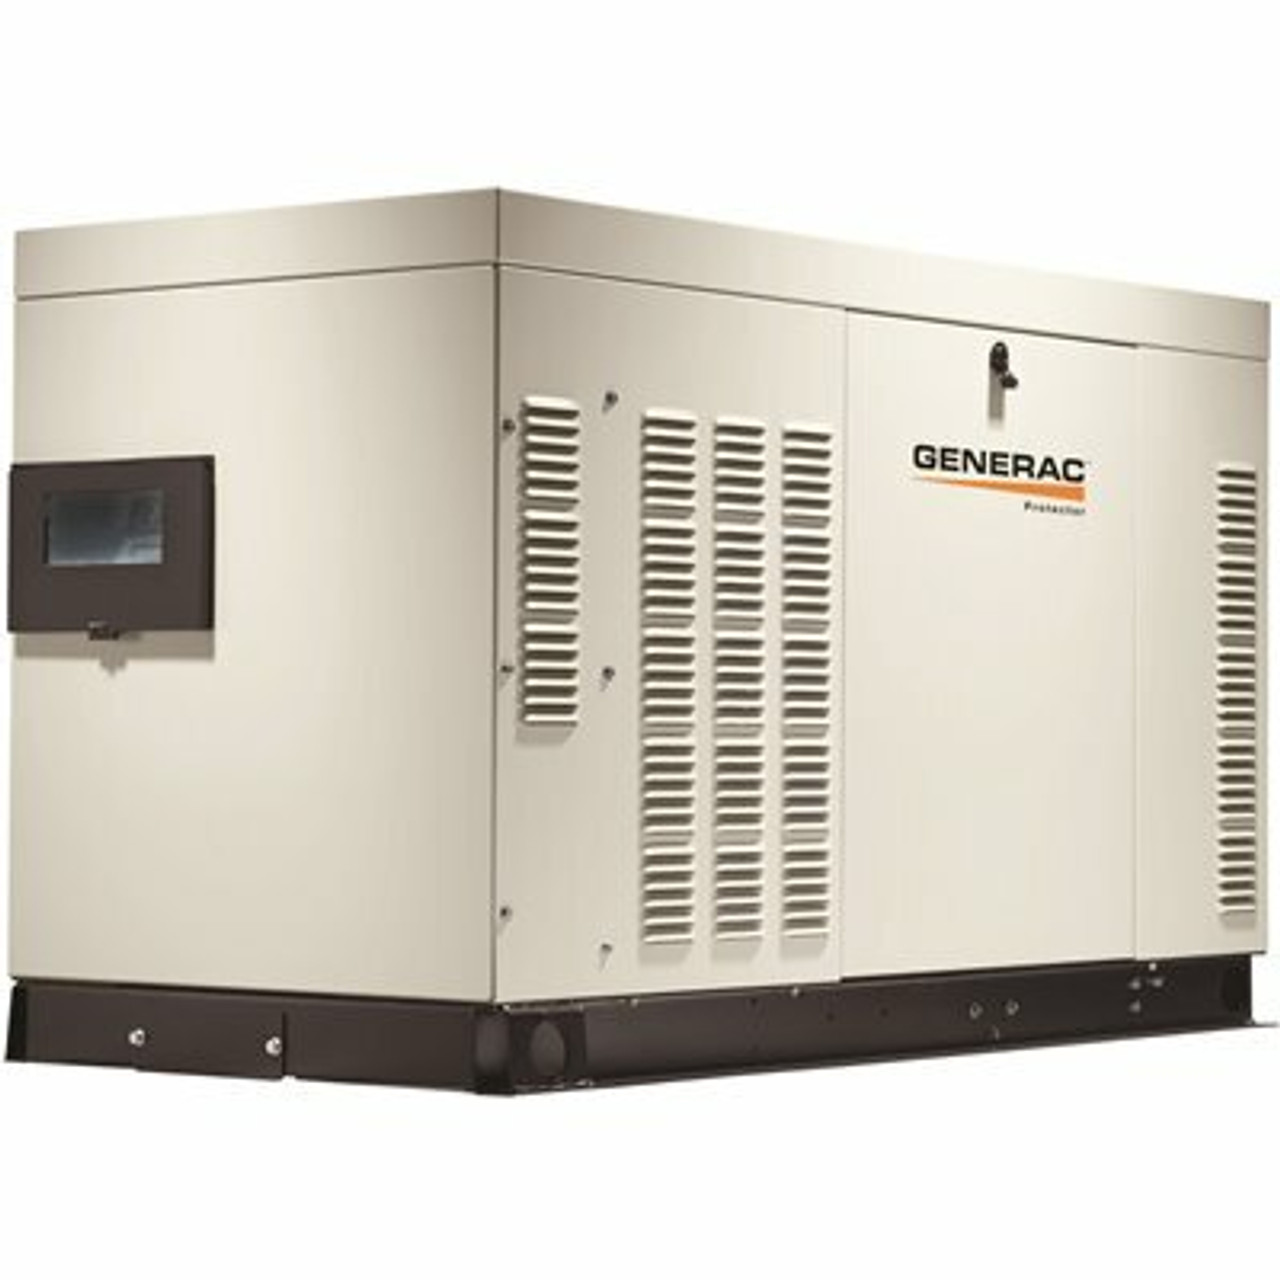 Generac 25,000-Watt Liquid Cooled Standby Generator 120-Volt/240-Volt Single Phase With Aluminum Enclosure